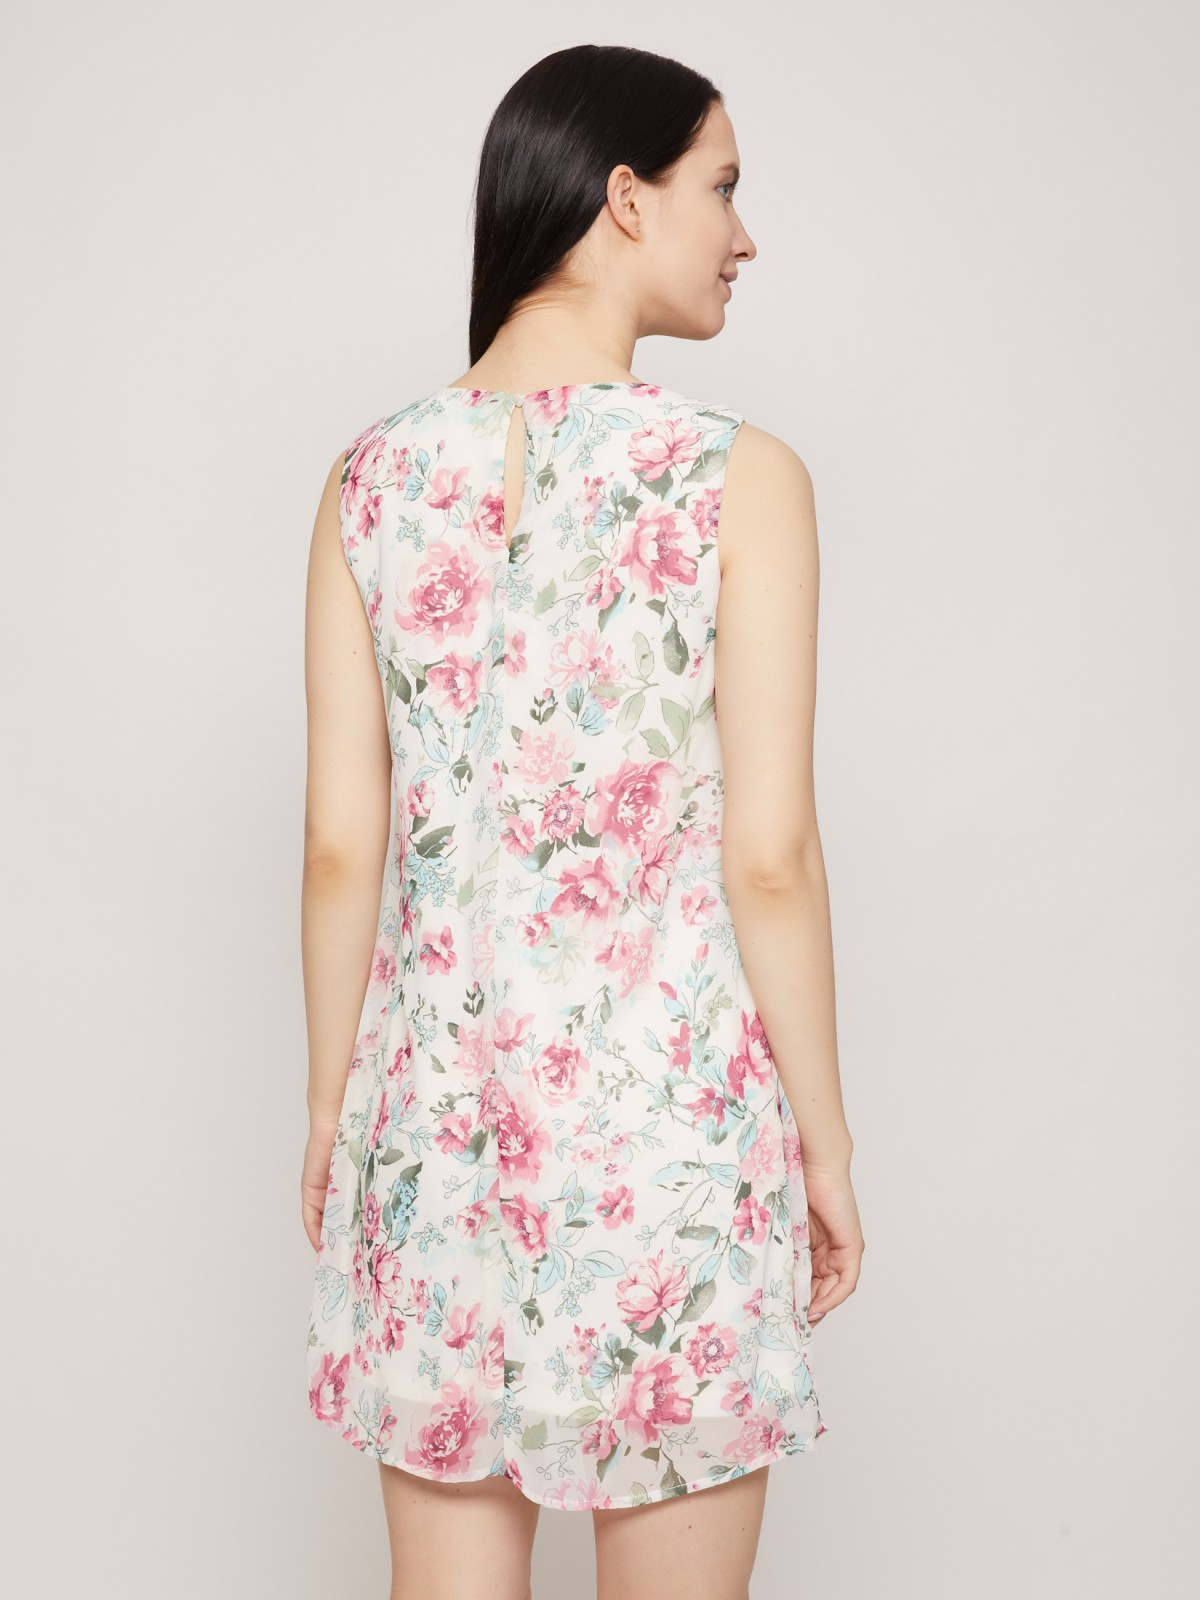 Шифоновое платье с цветочным принтом zolla 021248262122, размер XS - фото 5